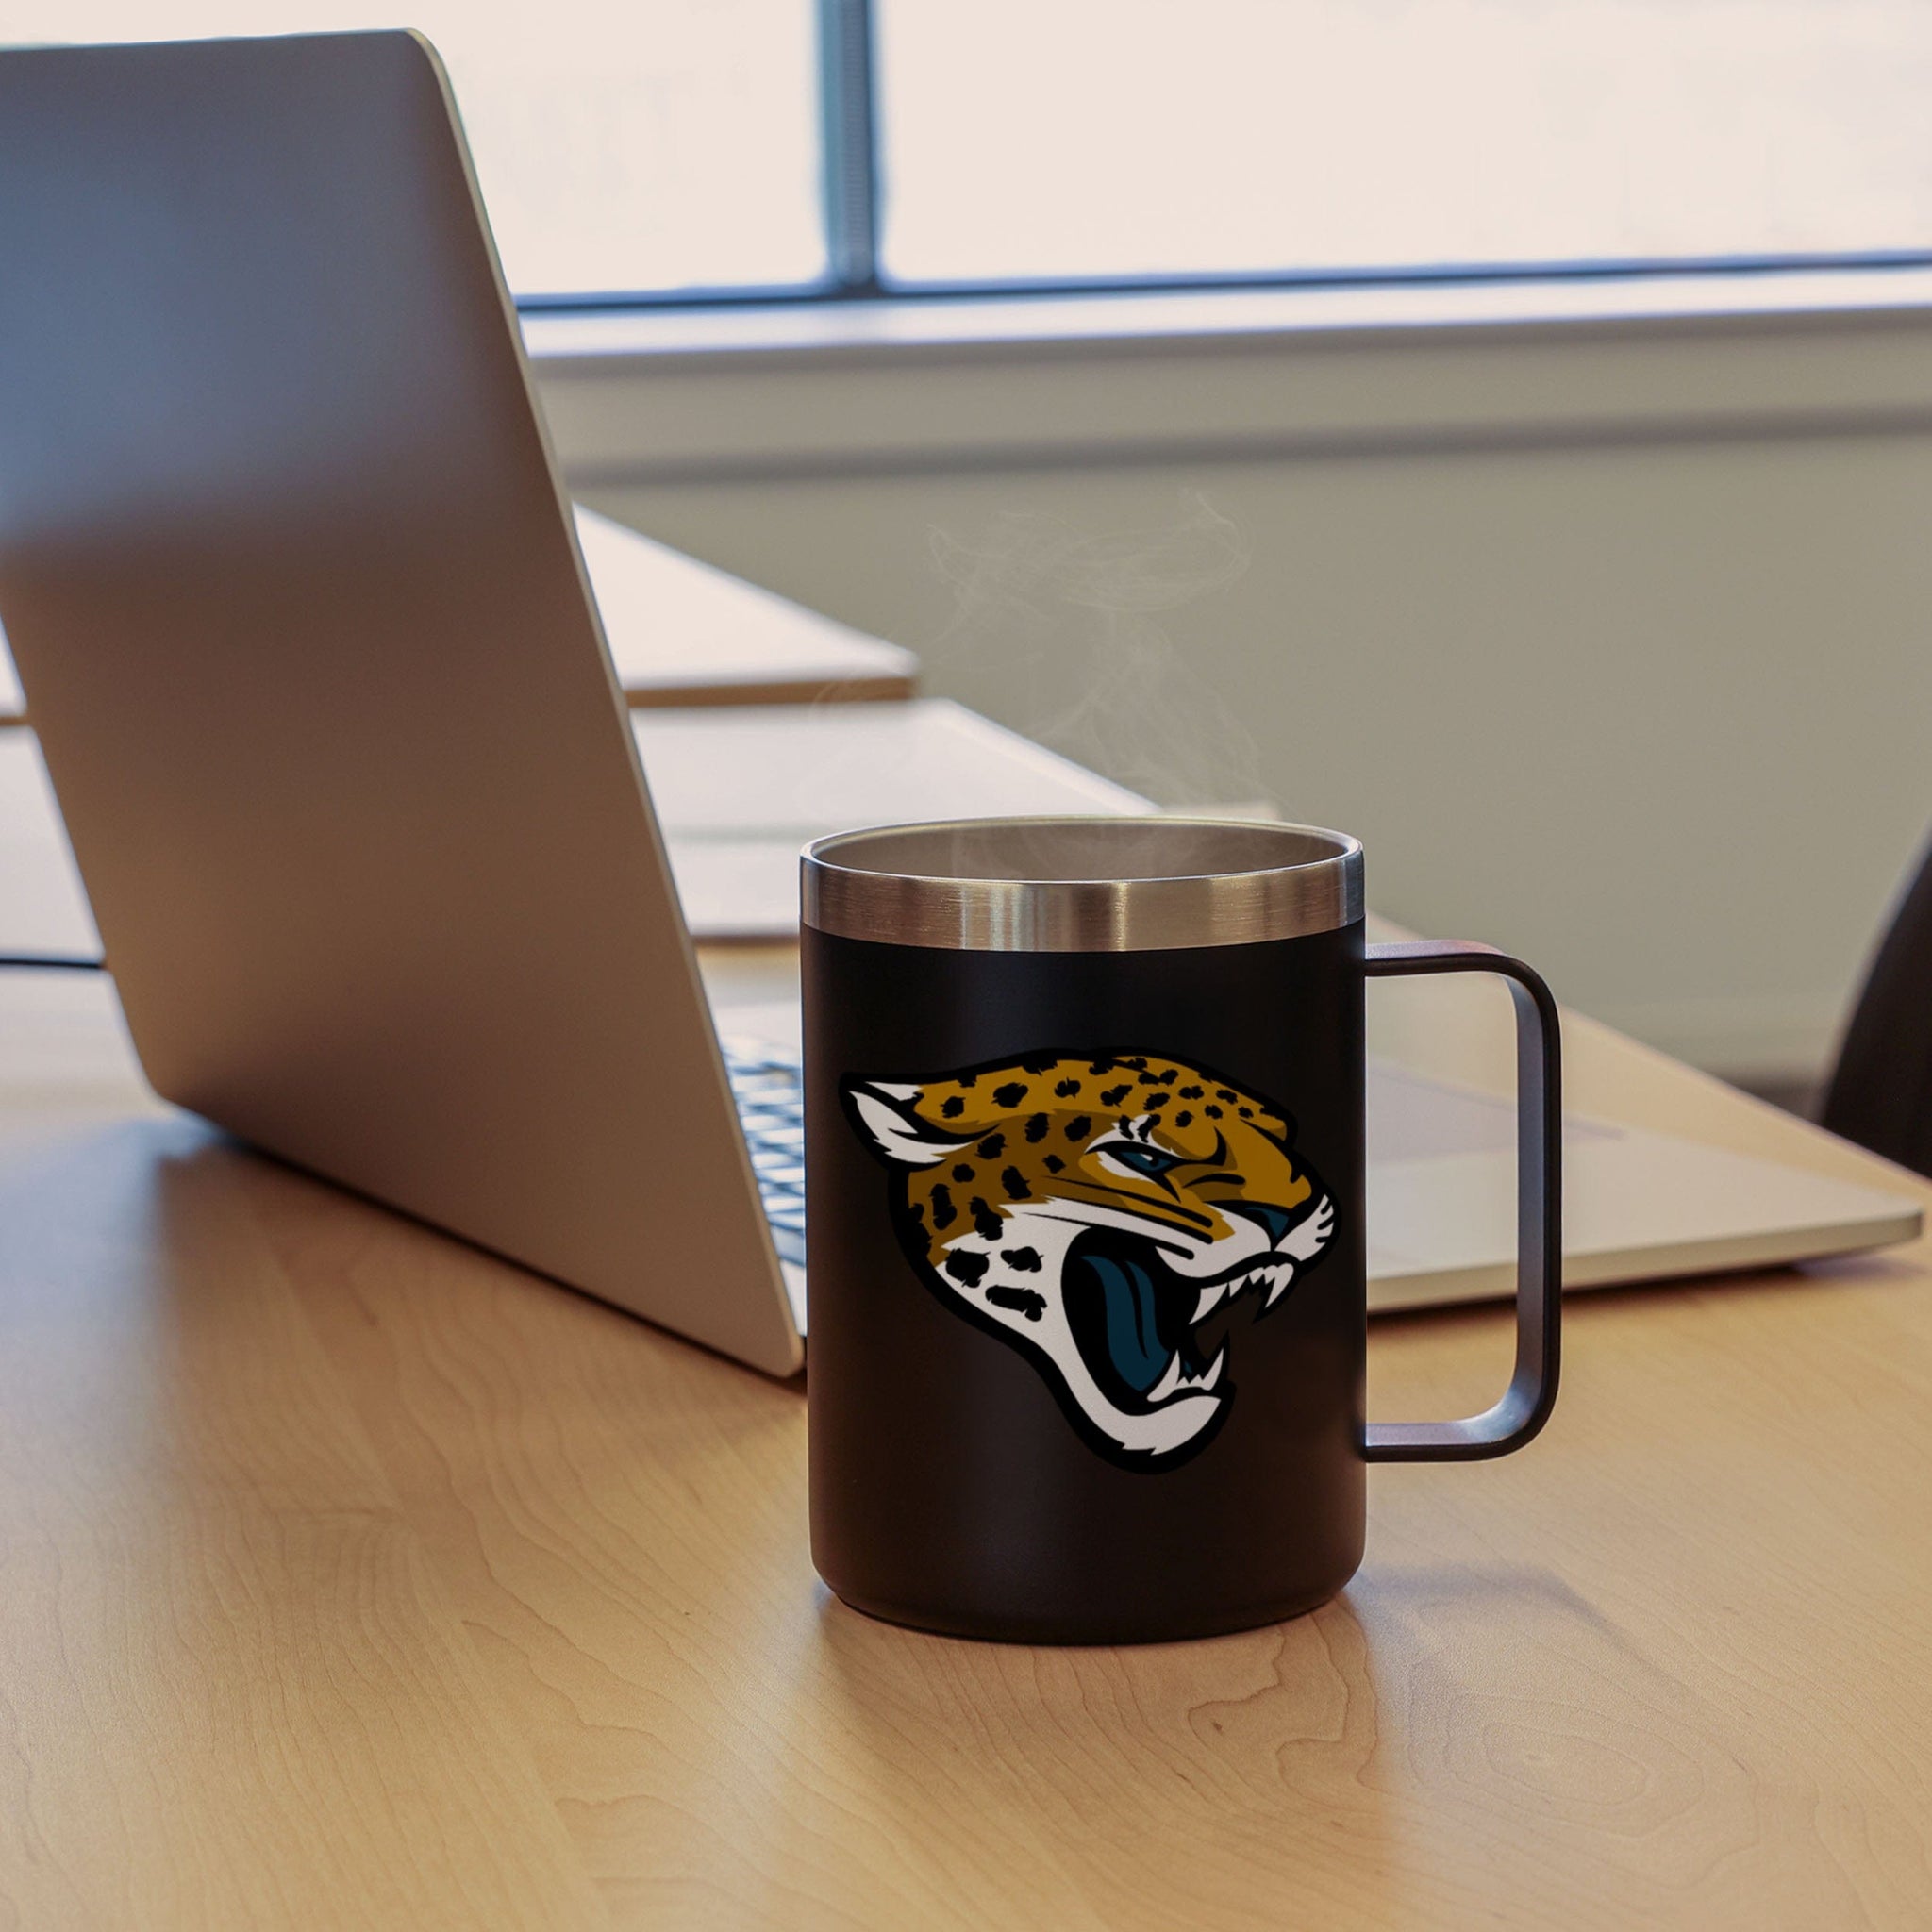 MemoryCo Officially Licensed NFL 15oz Reflective Mug - Jaguars